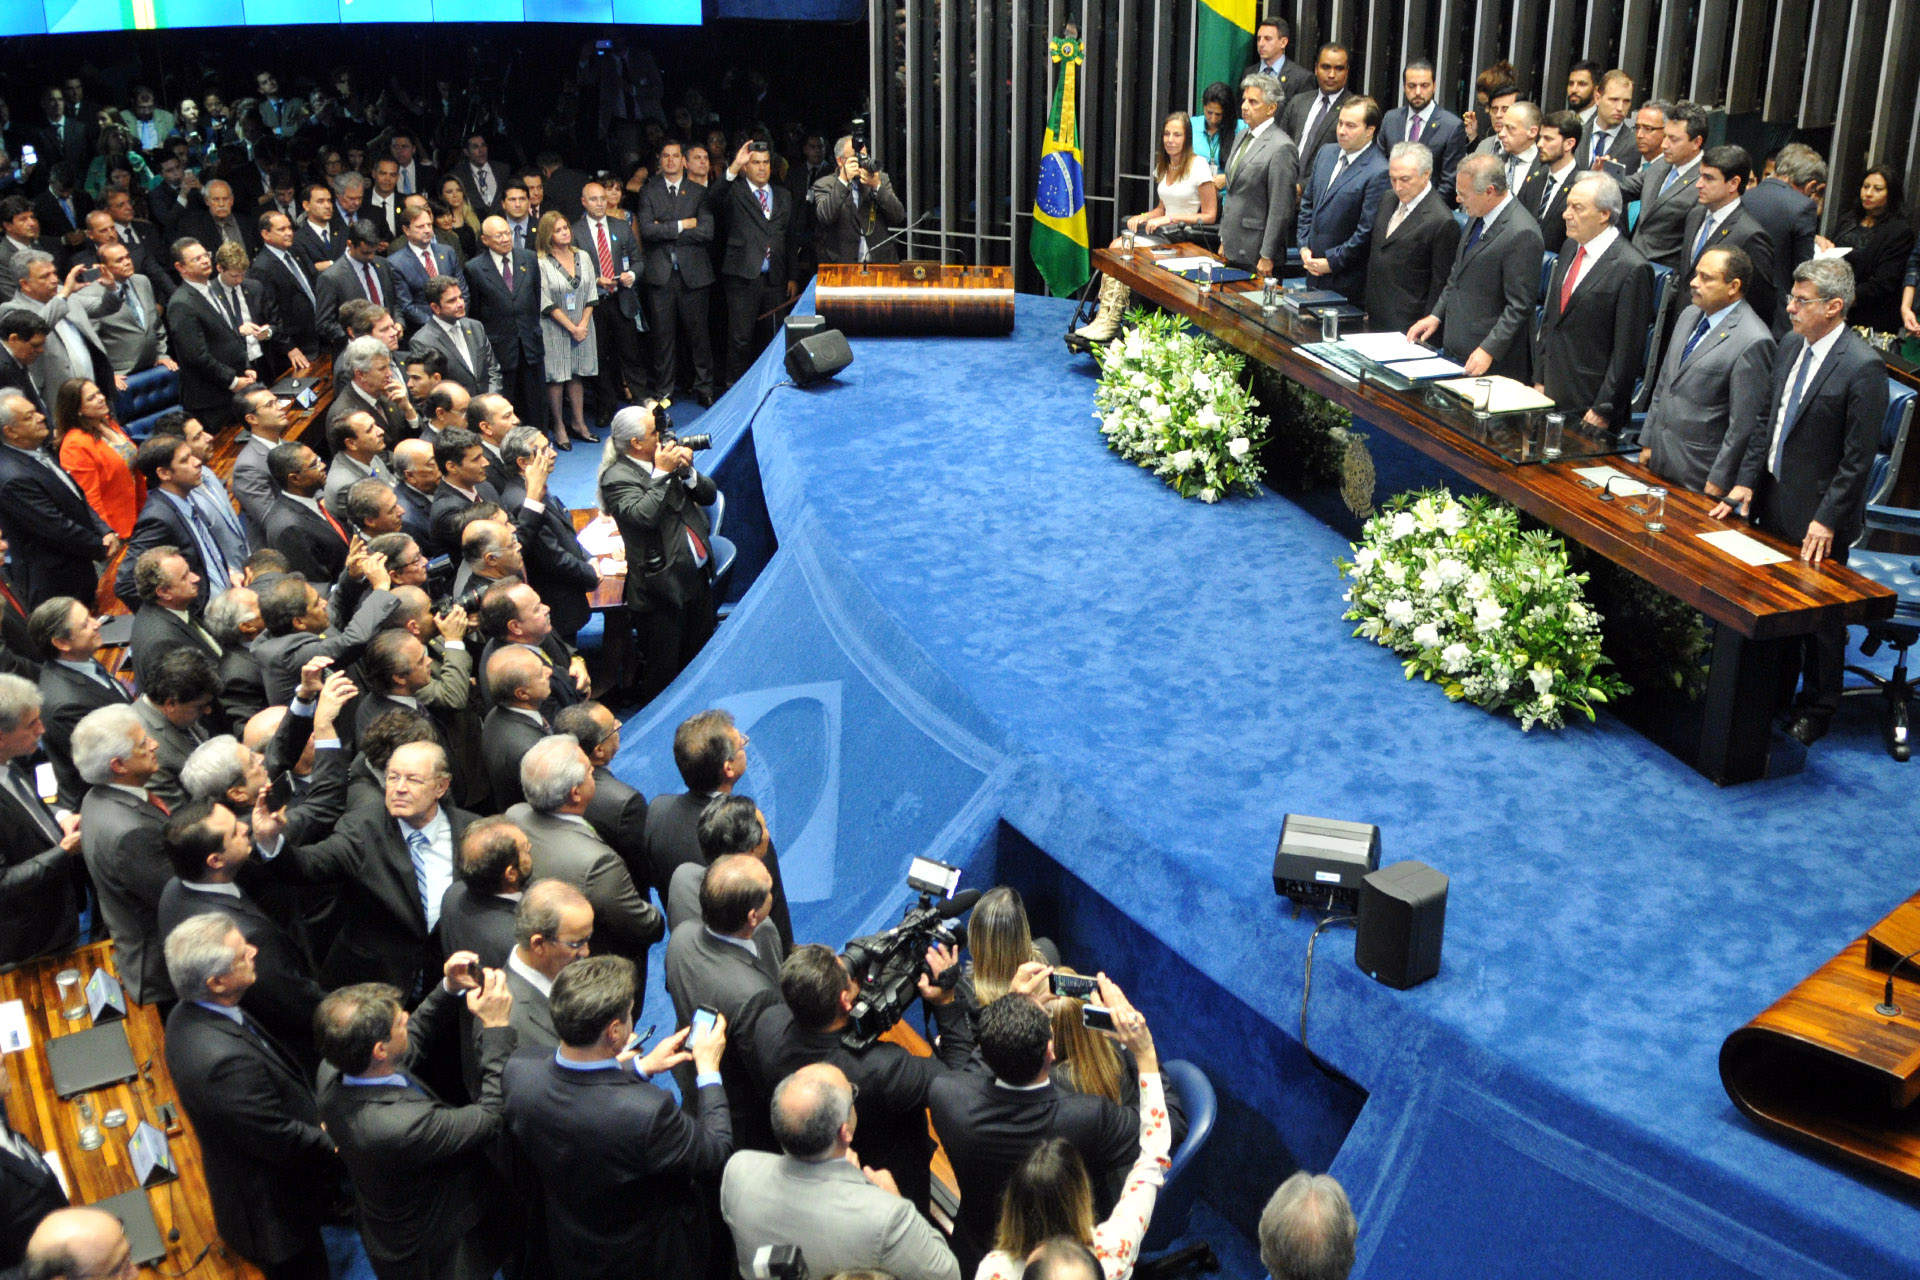 O governador de Brasília, Rodrigo Rollemberg, assistiu à posse do presidente da República, Michel Temer, nesta quarta-feira (31), no Senado Federal